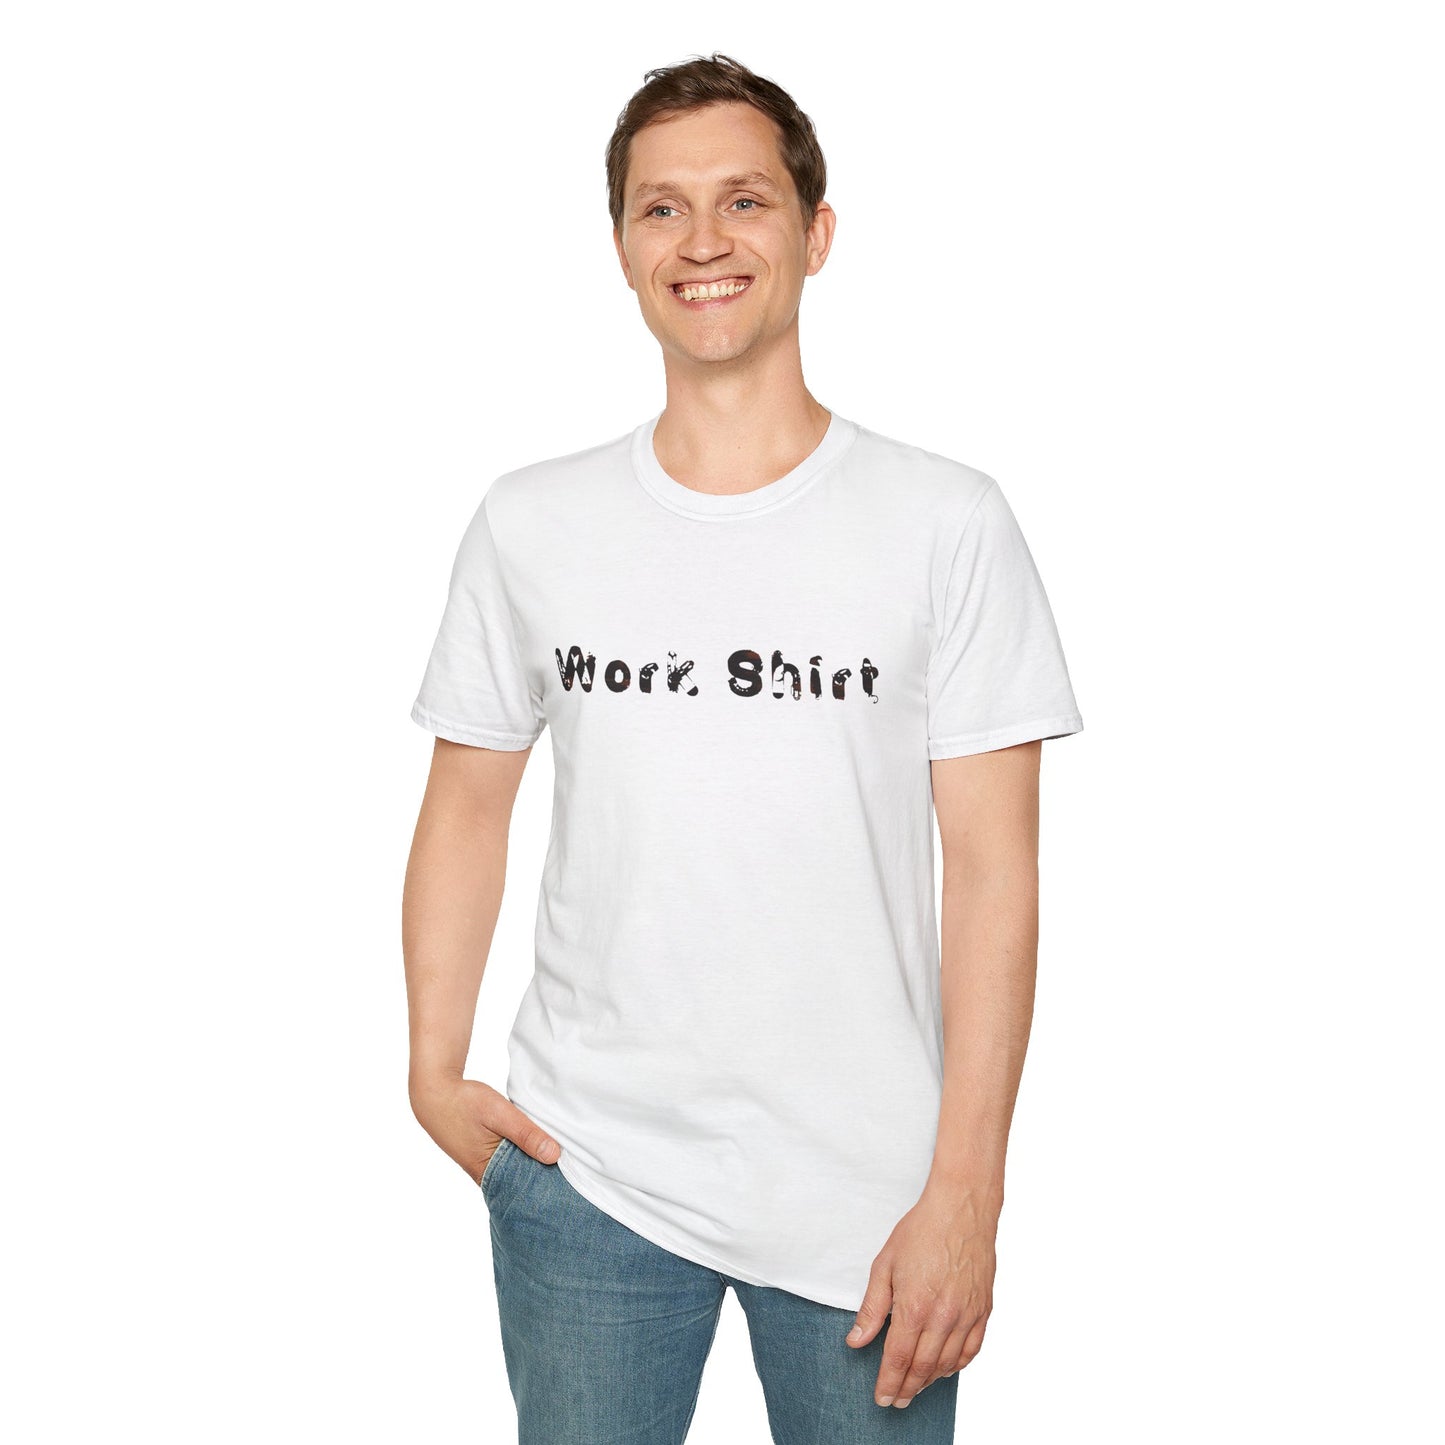 Work Shirt Humor - Unisex - Softstyle T-Shirt